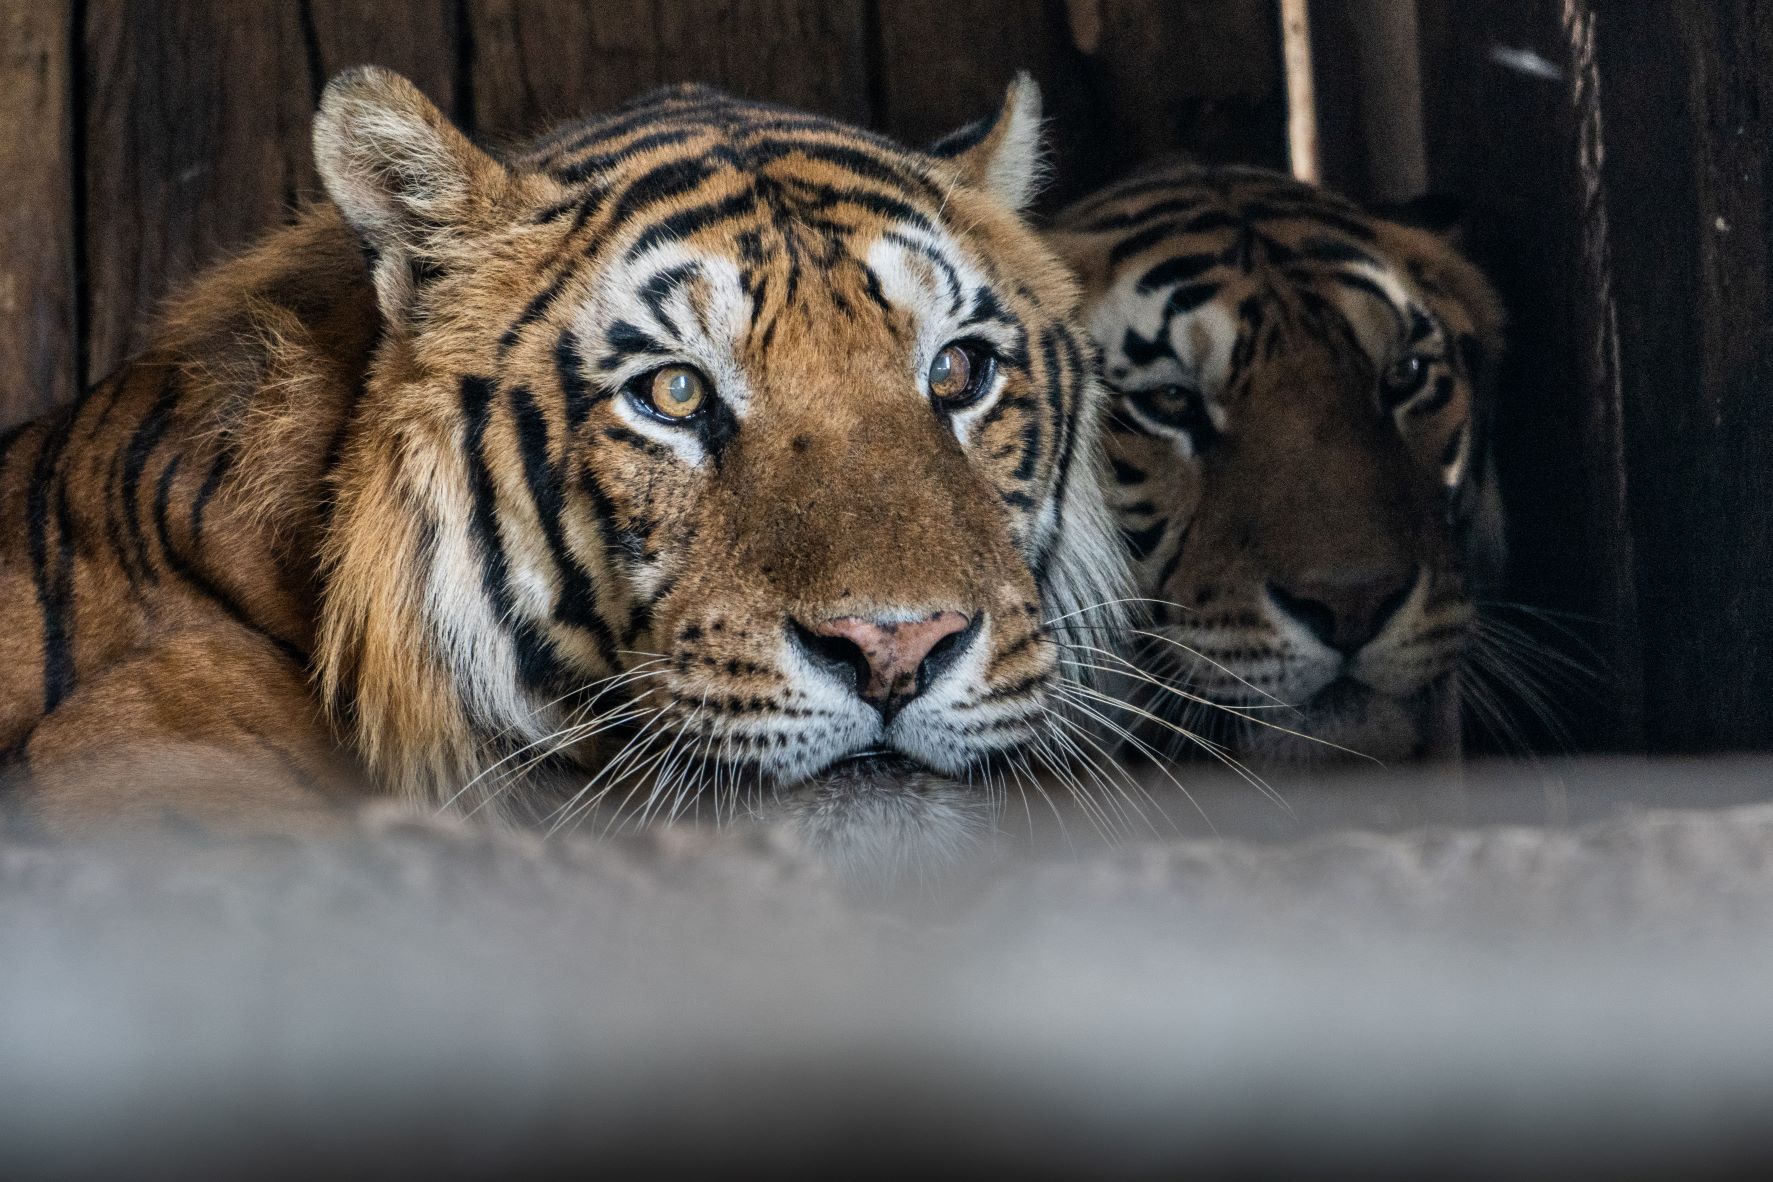 Tiger im Zugwagon in Argentinien